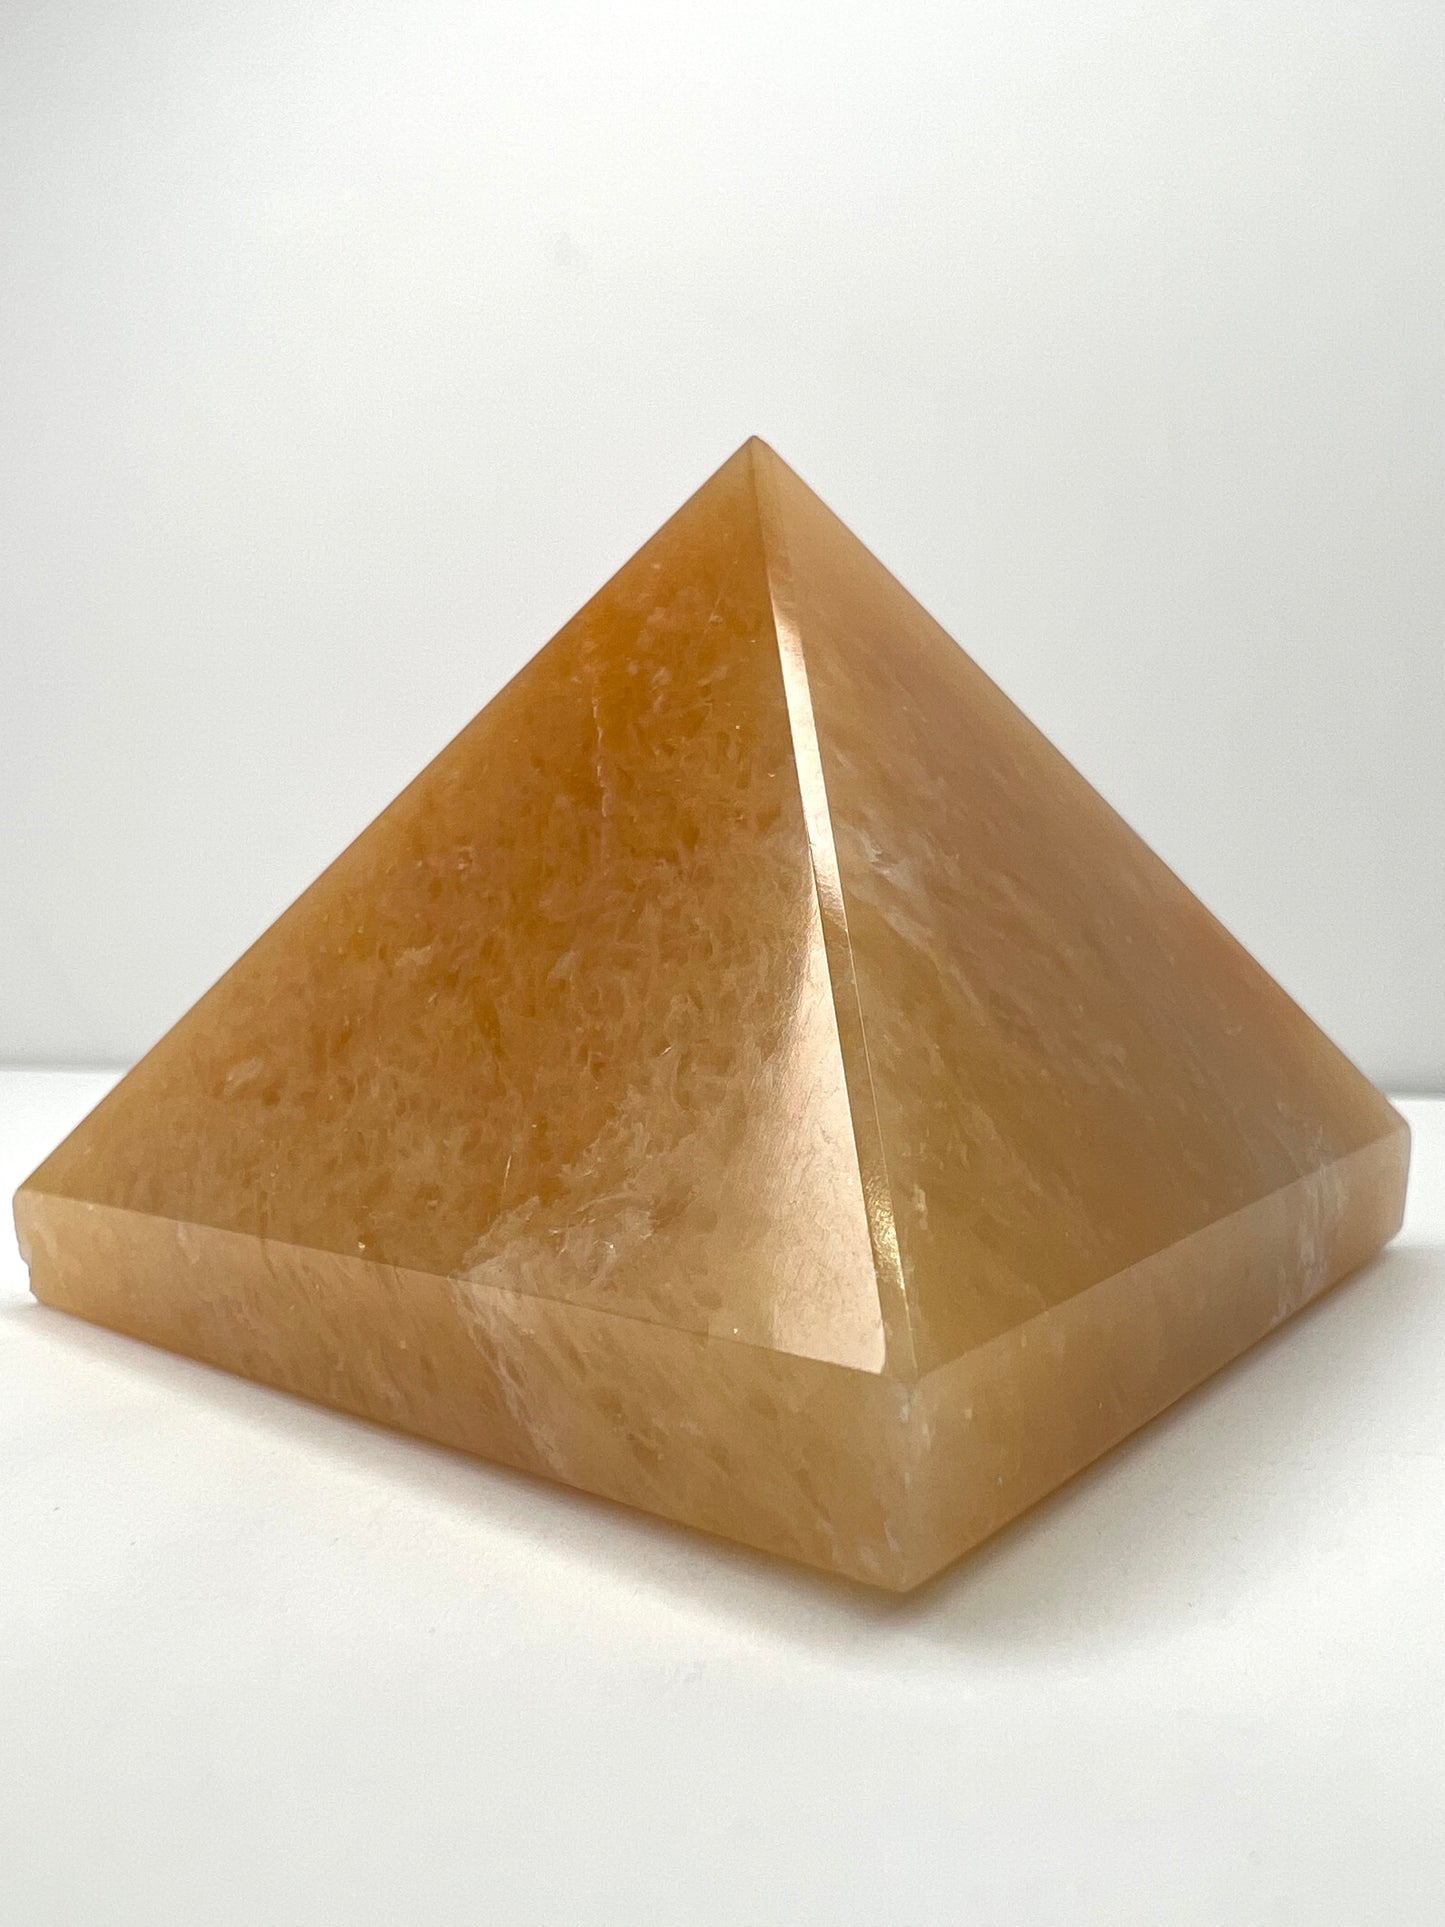 Aventurine, Yellow - Pyramid